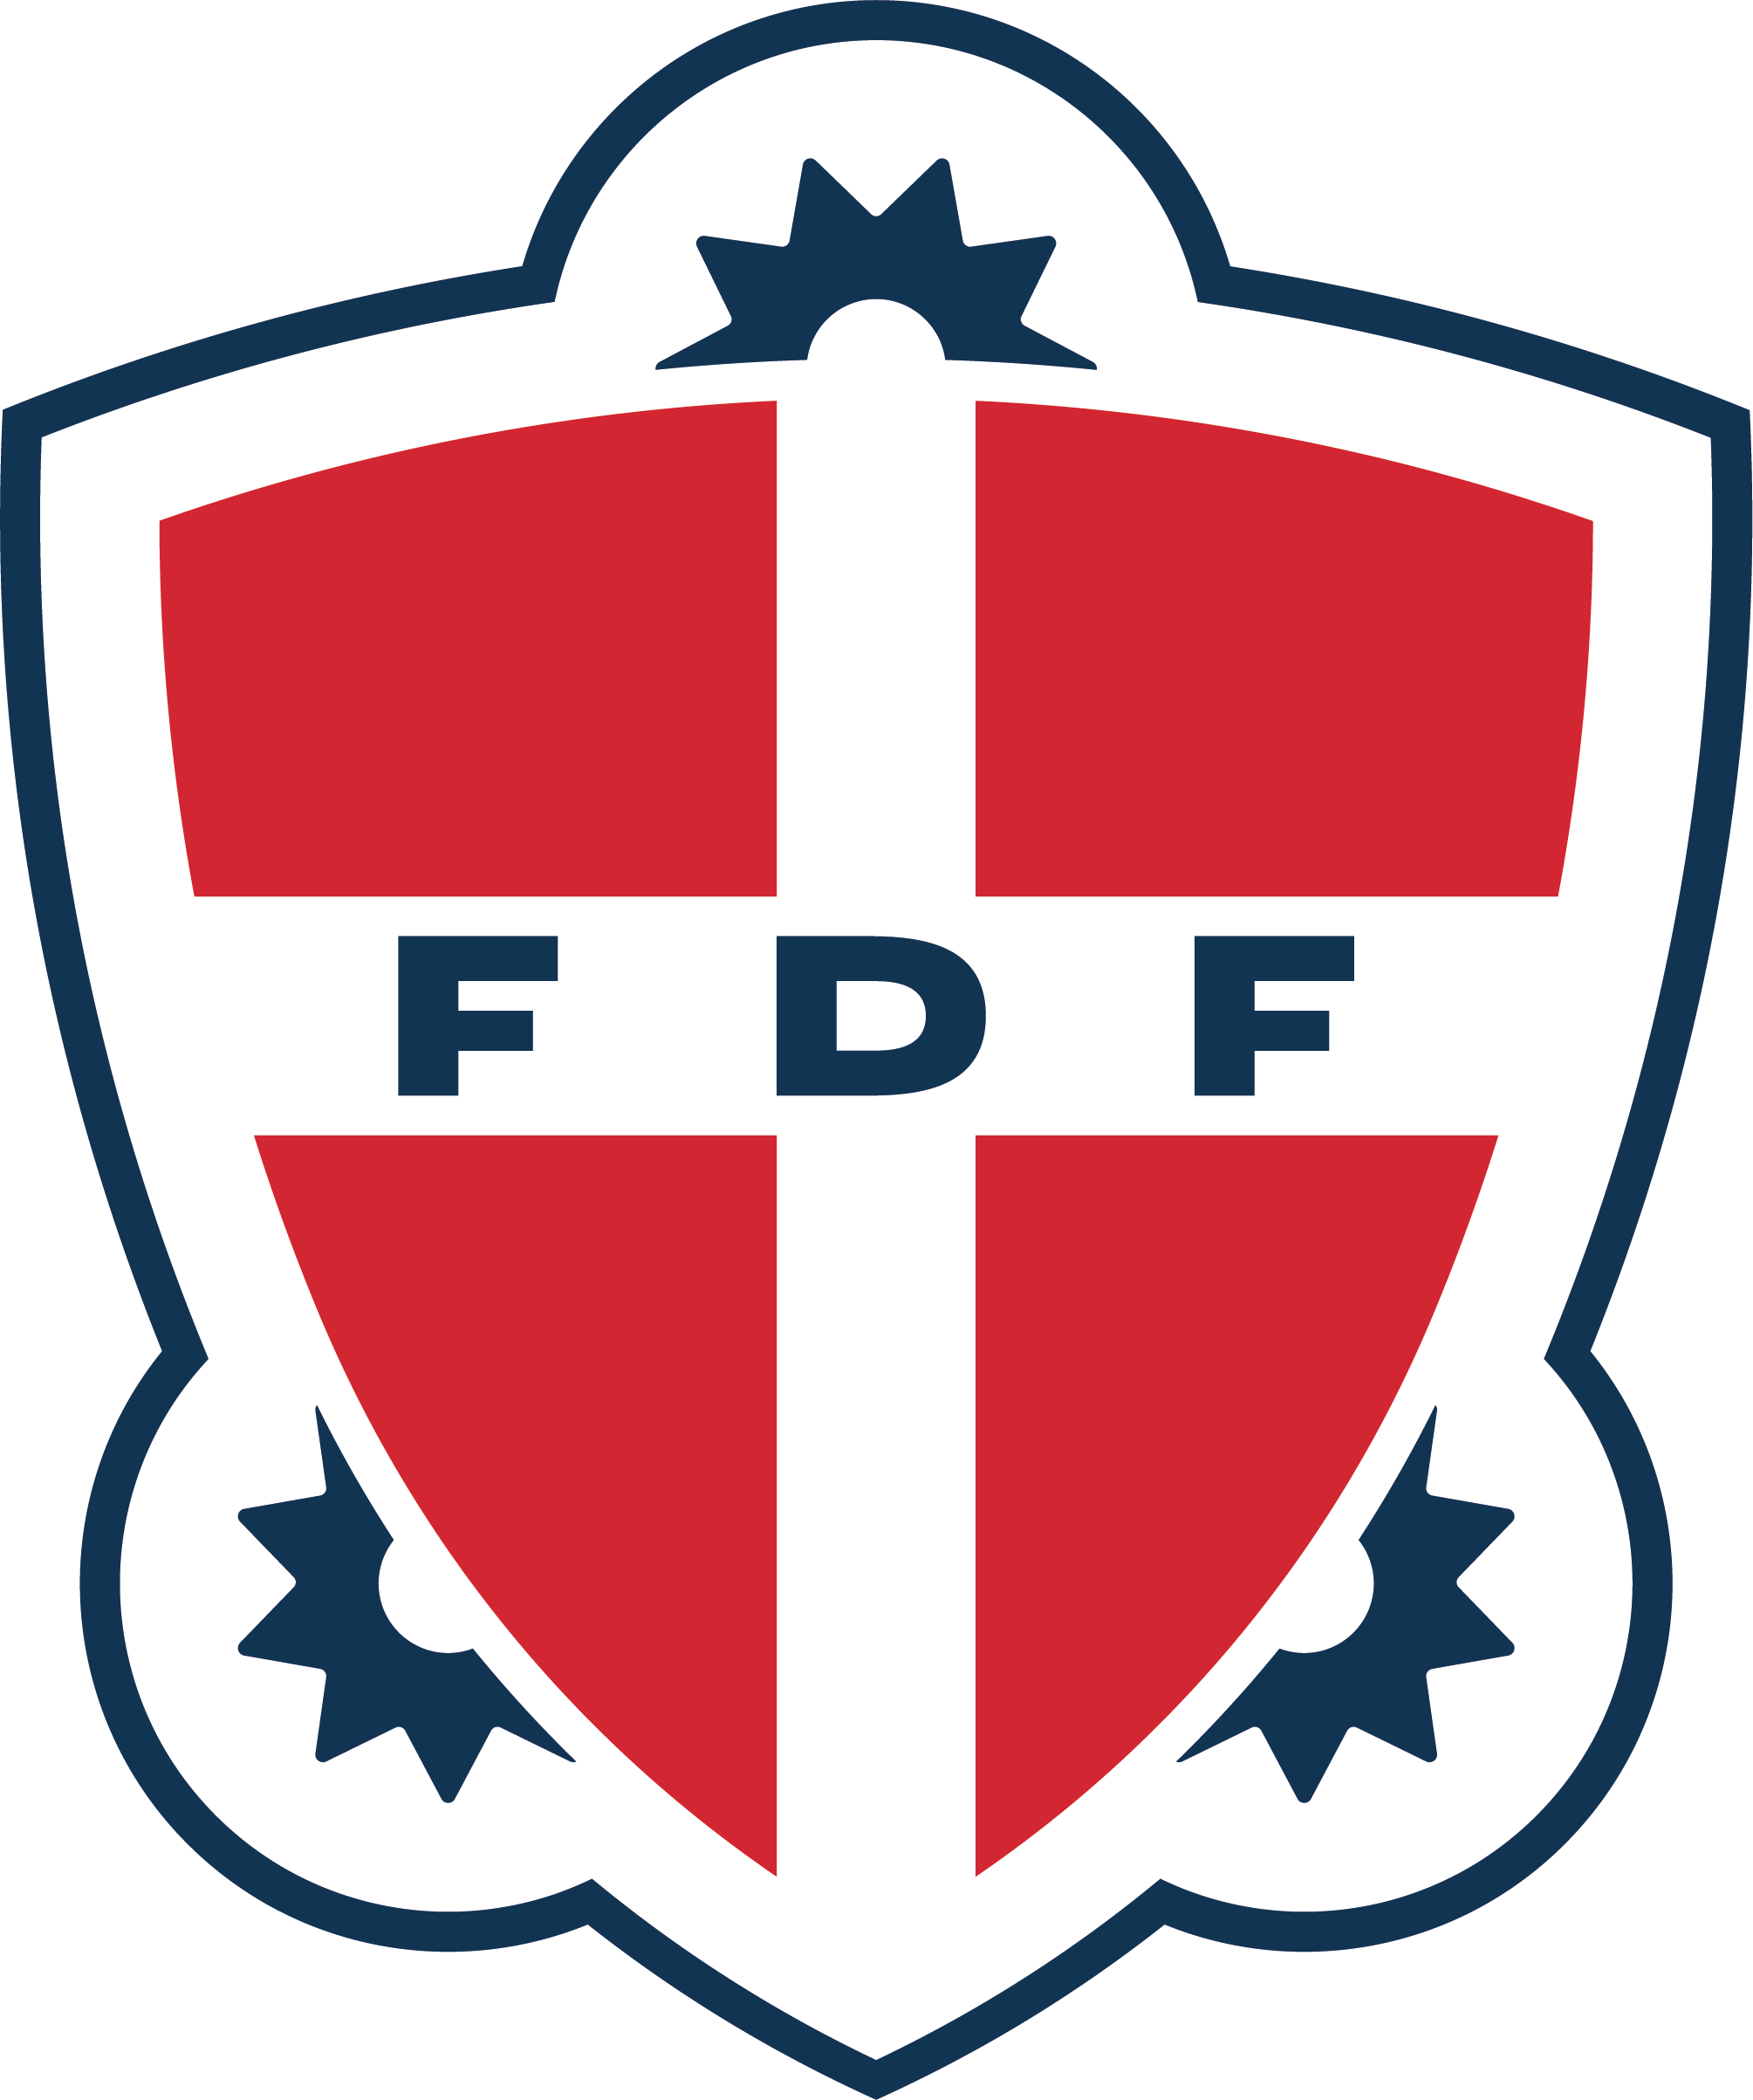 FDF Sydhavnen